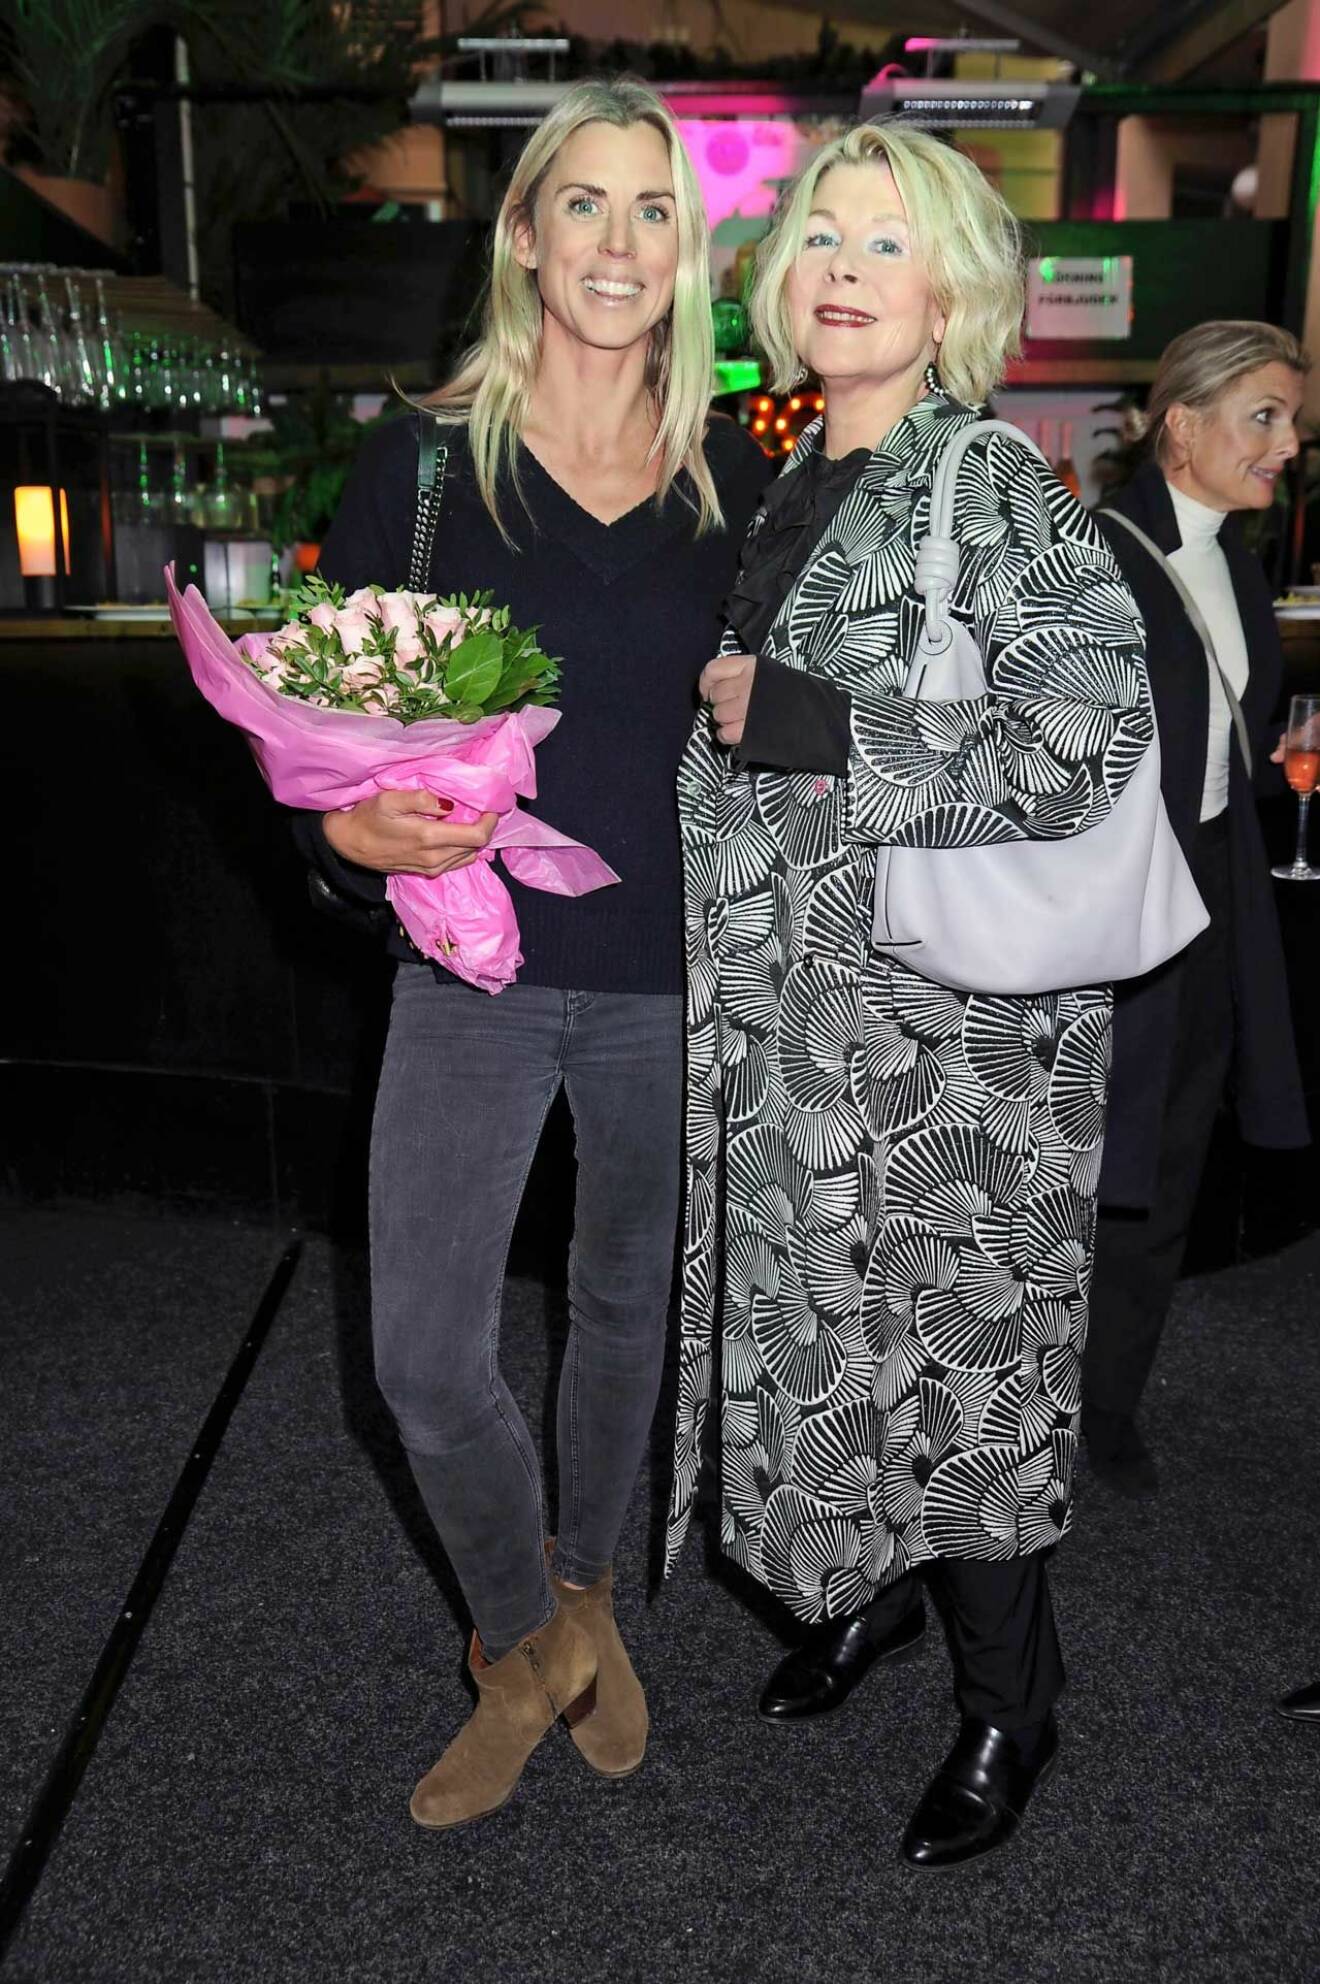 Med vackra rosor kom Nicole de Geer tillsammans med teaterägaren Agneta Villman.